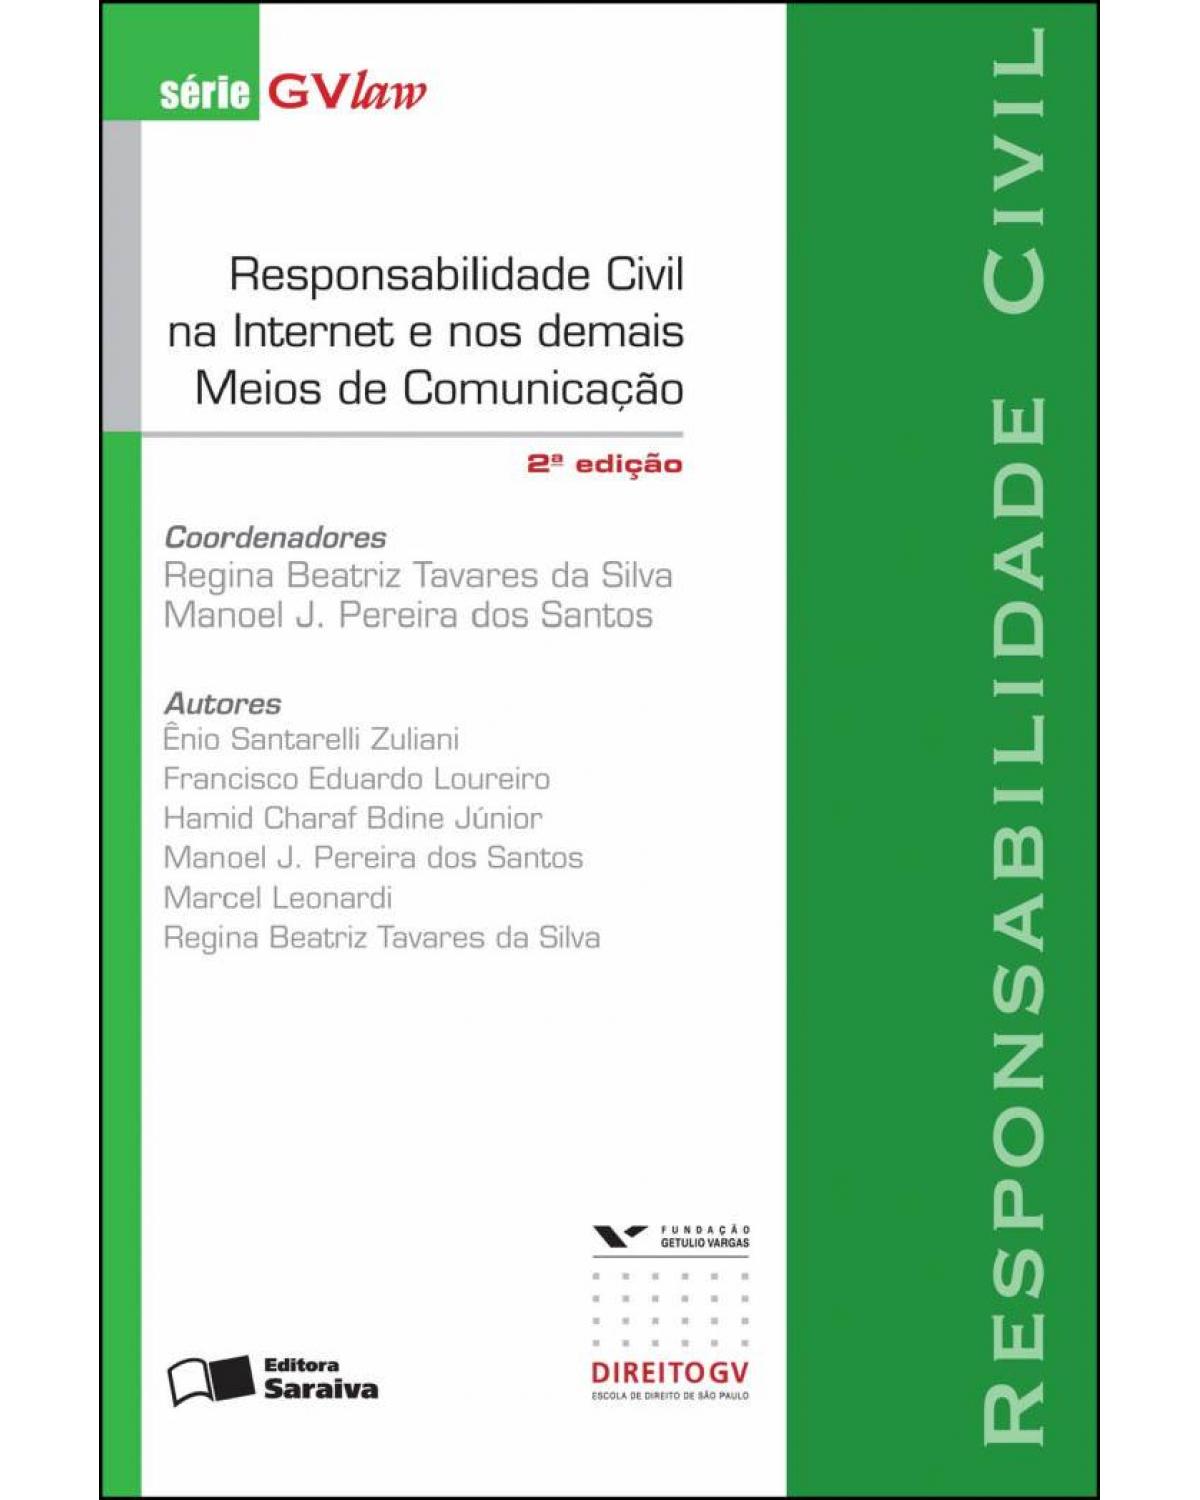 Responsabilidade civil na internet e nos demais meios de comunicação - 2ª Edição | 2013